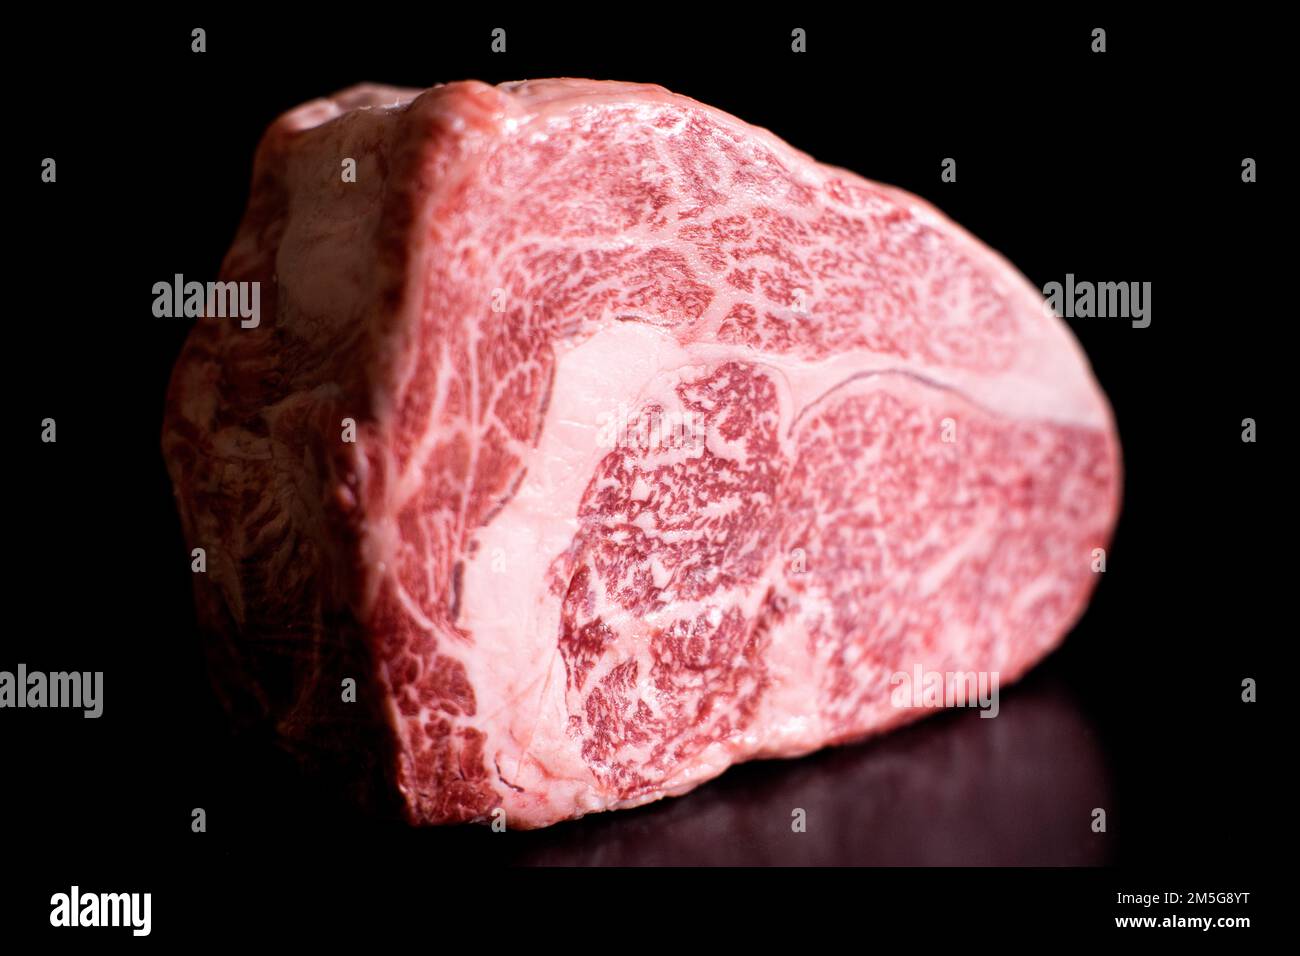 Wagyu-Steak, hochwertiges japanisches Rindfleisch. Wagyu ist der Sammelname für die vier wichtigsten japanischen Rinderrassen. Stockfoto